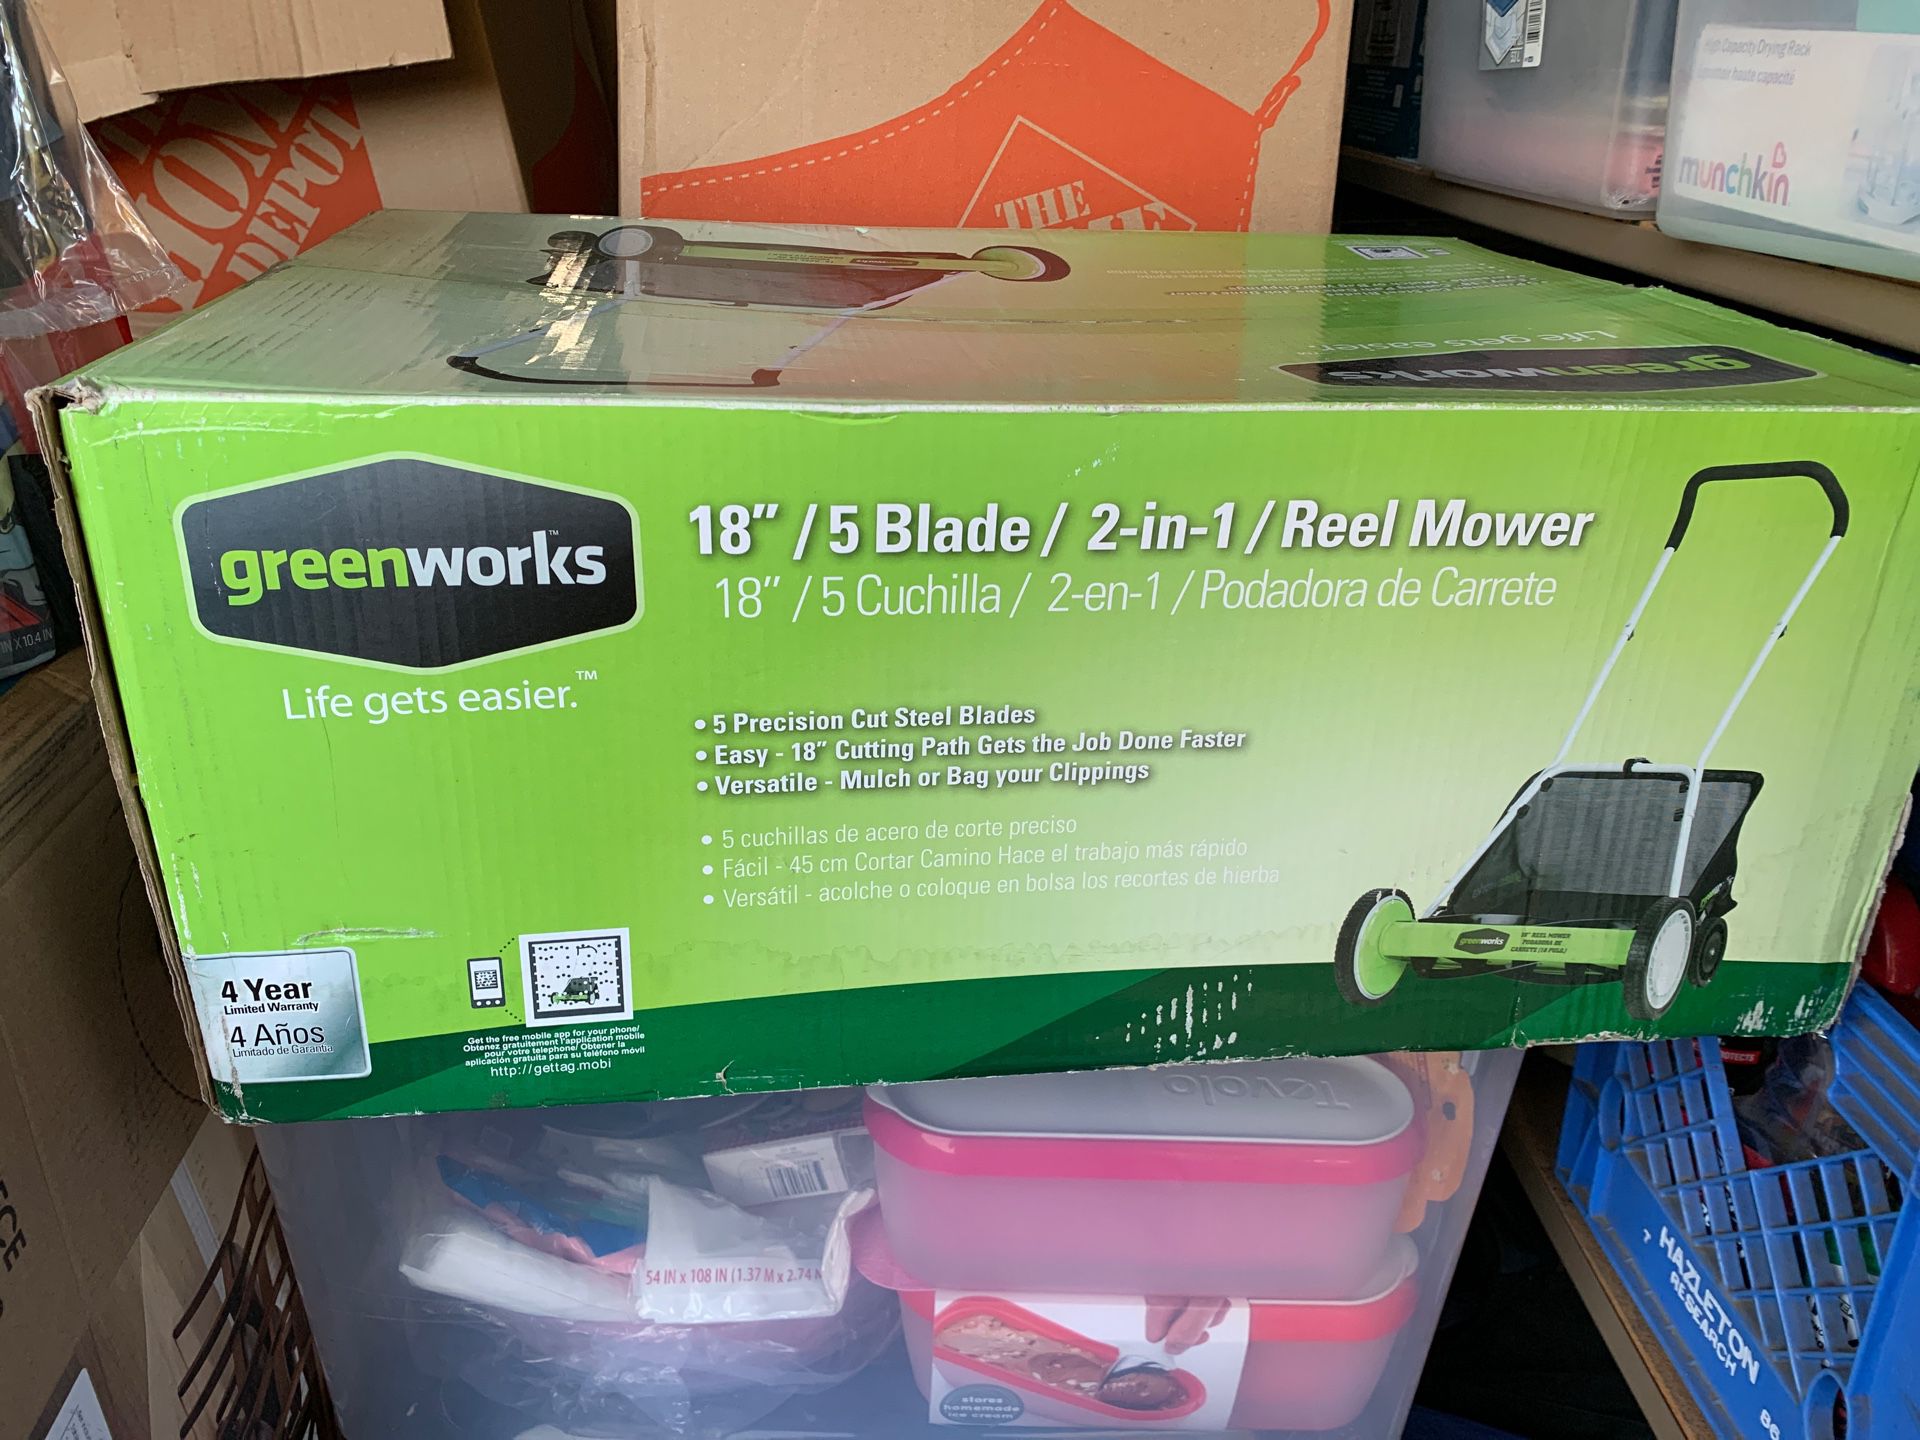 Greenworks Reel Lawn Mower 18"